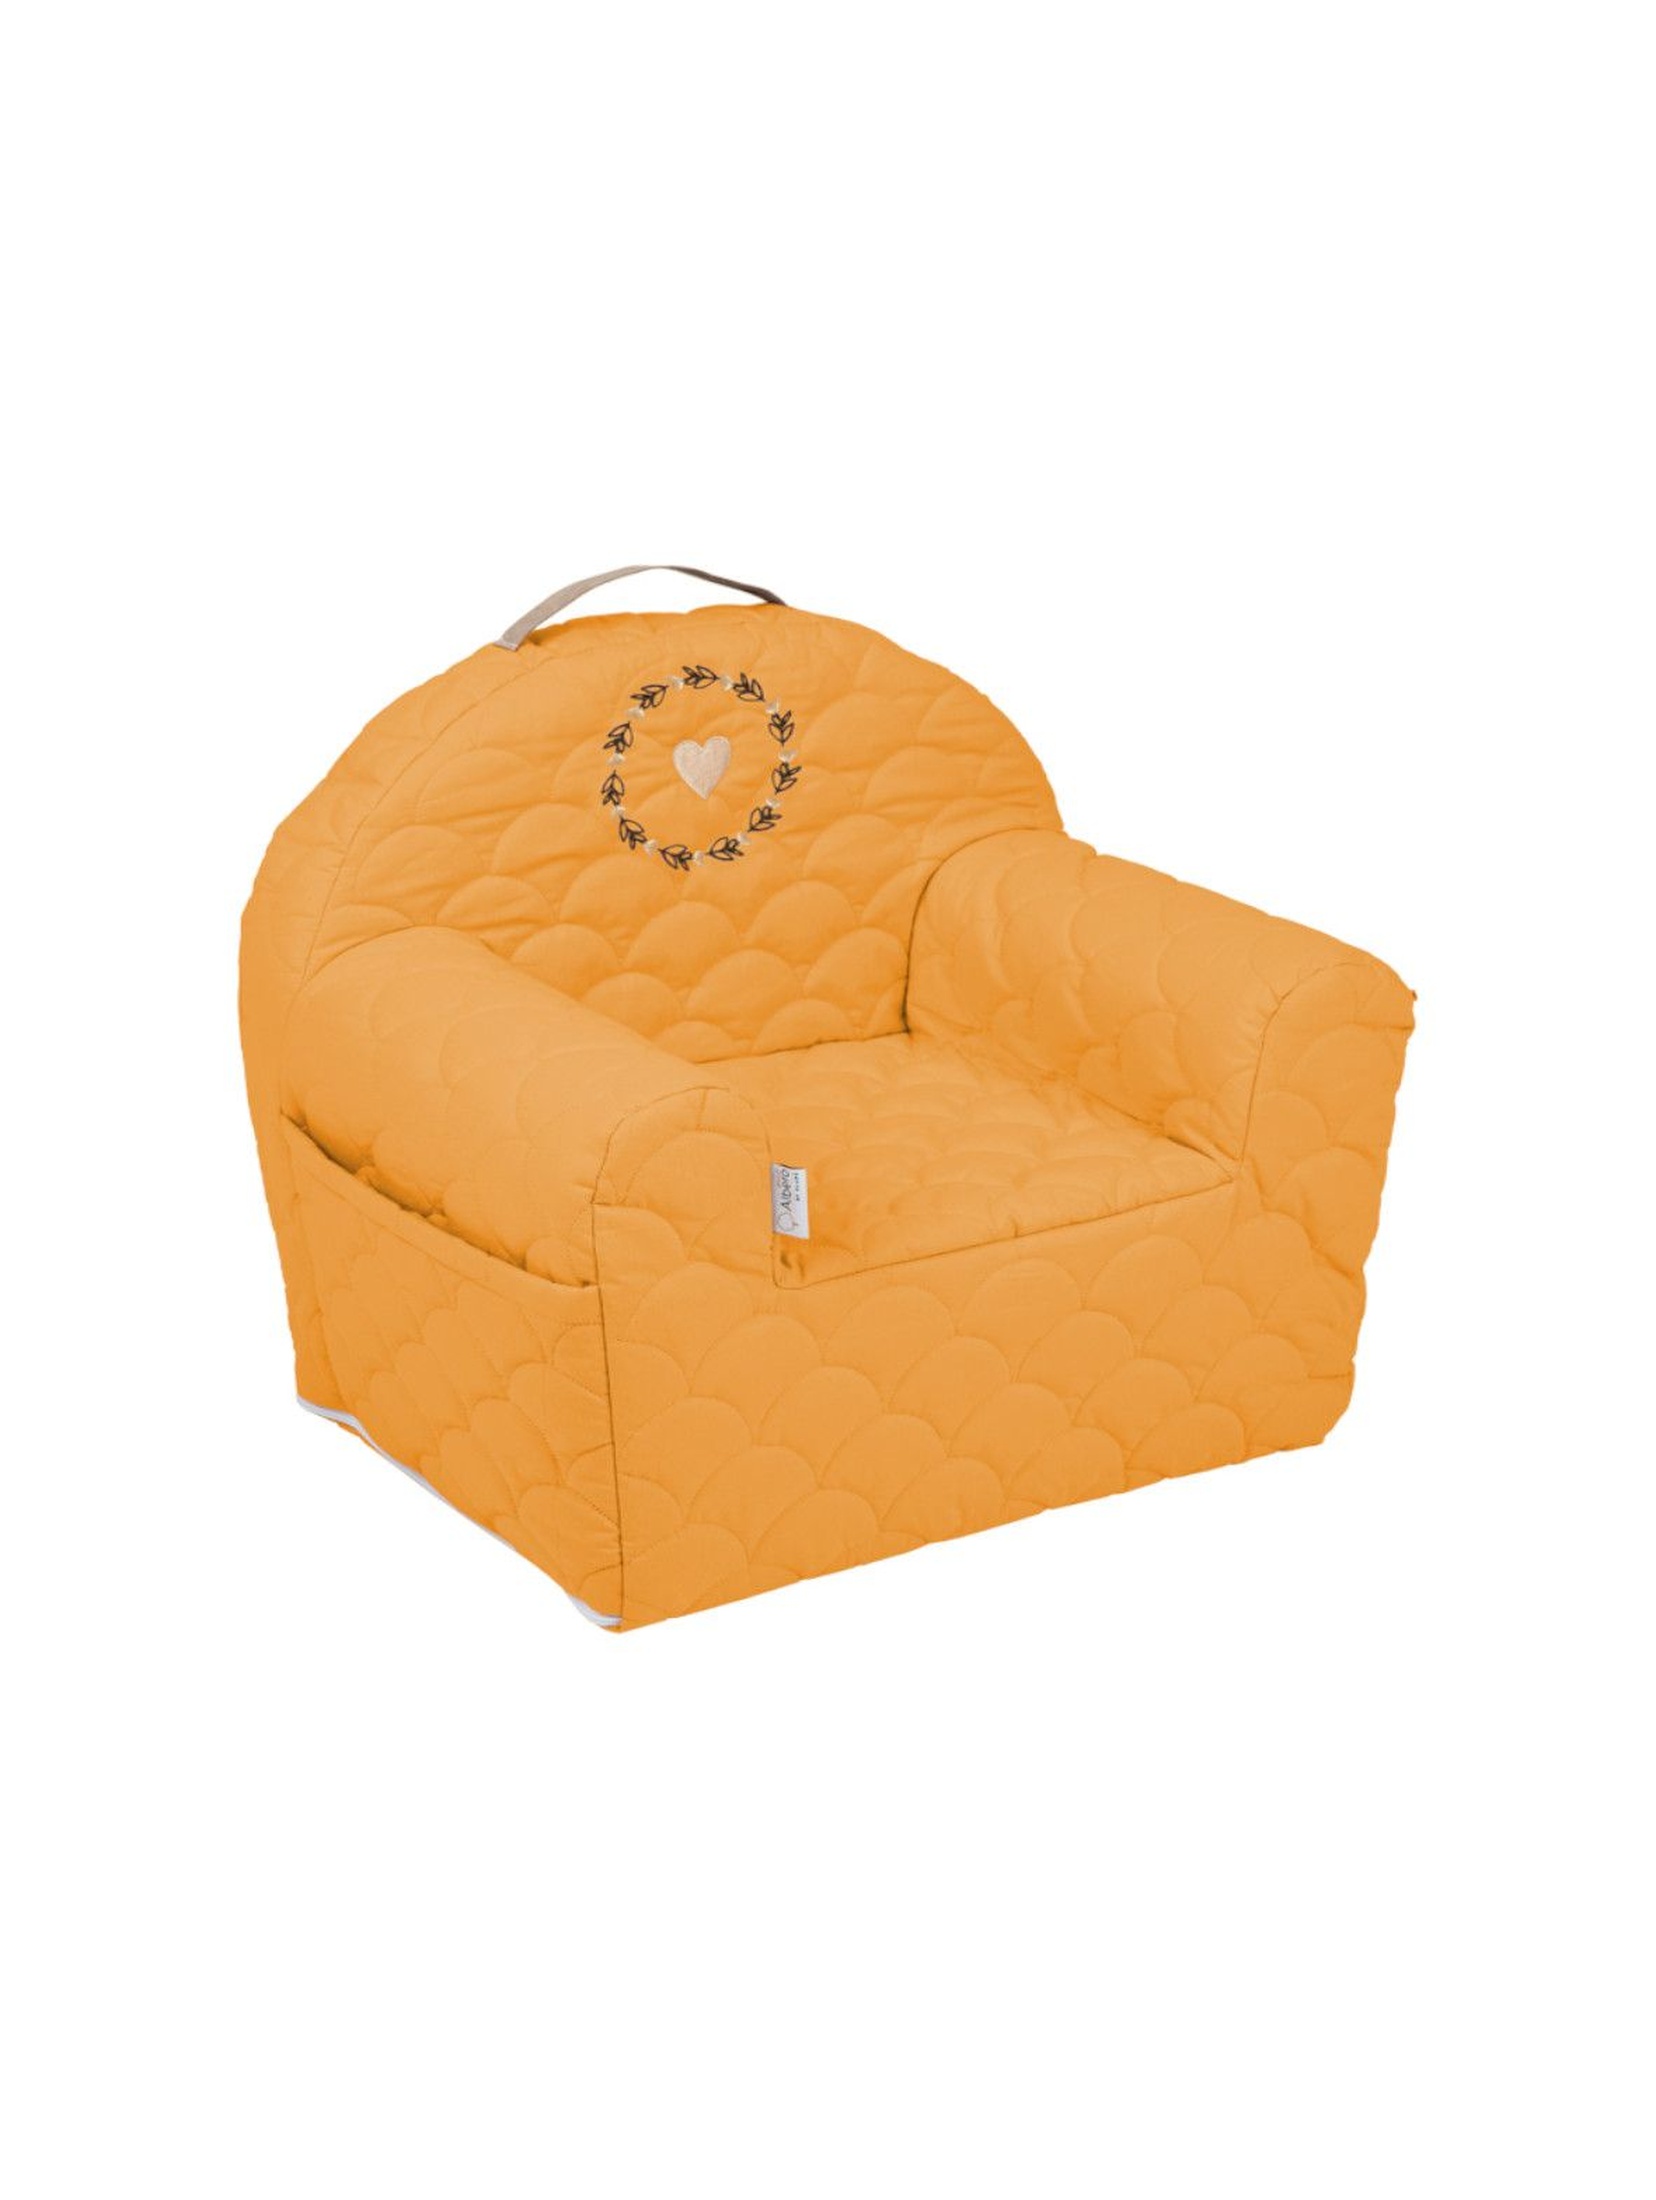 Bawełniany fotelik piankowy w kolorze musztardowym - 50x35x45 cm